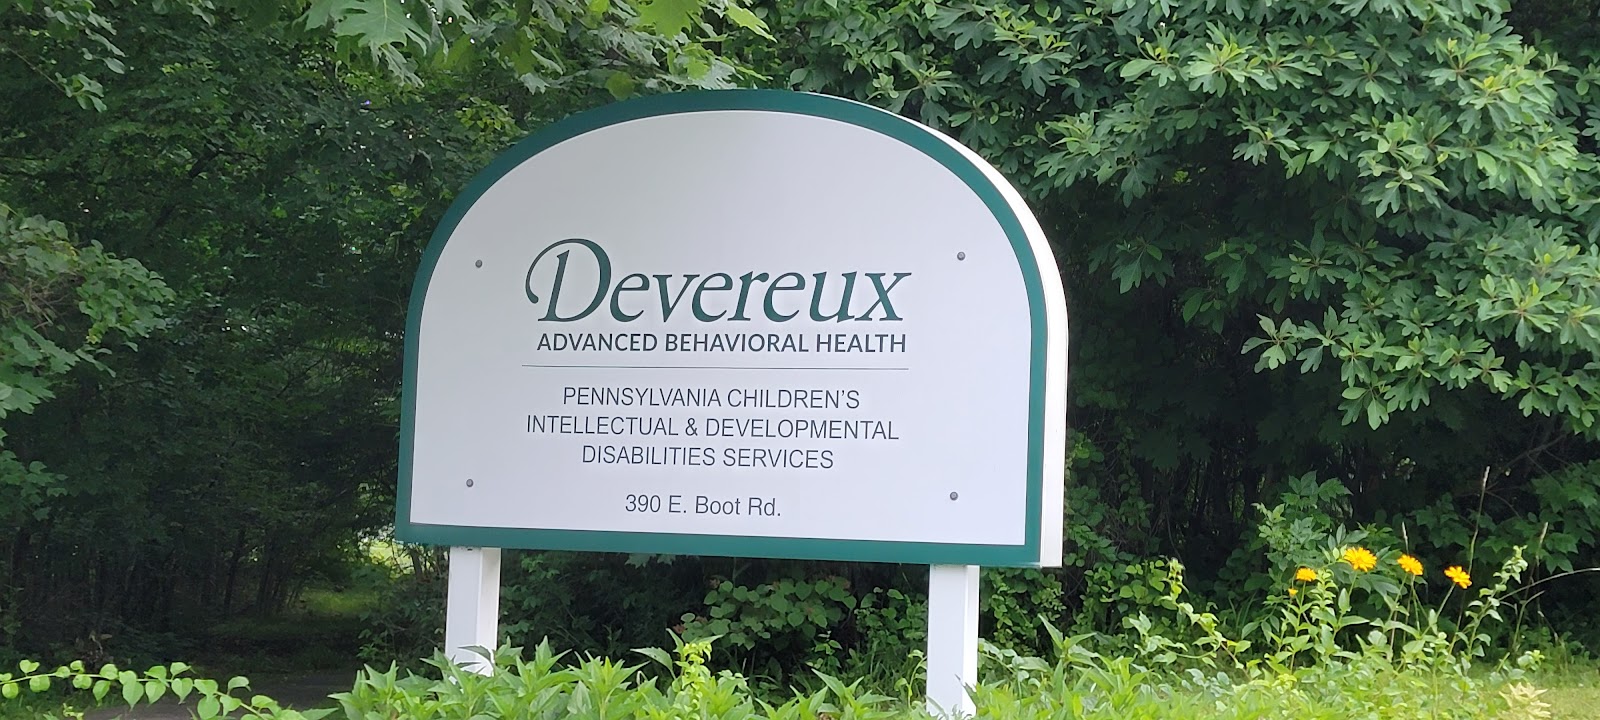 Devereux Foundation - Children's IDD Services